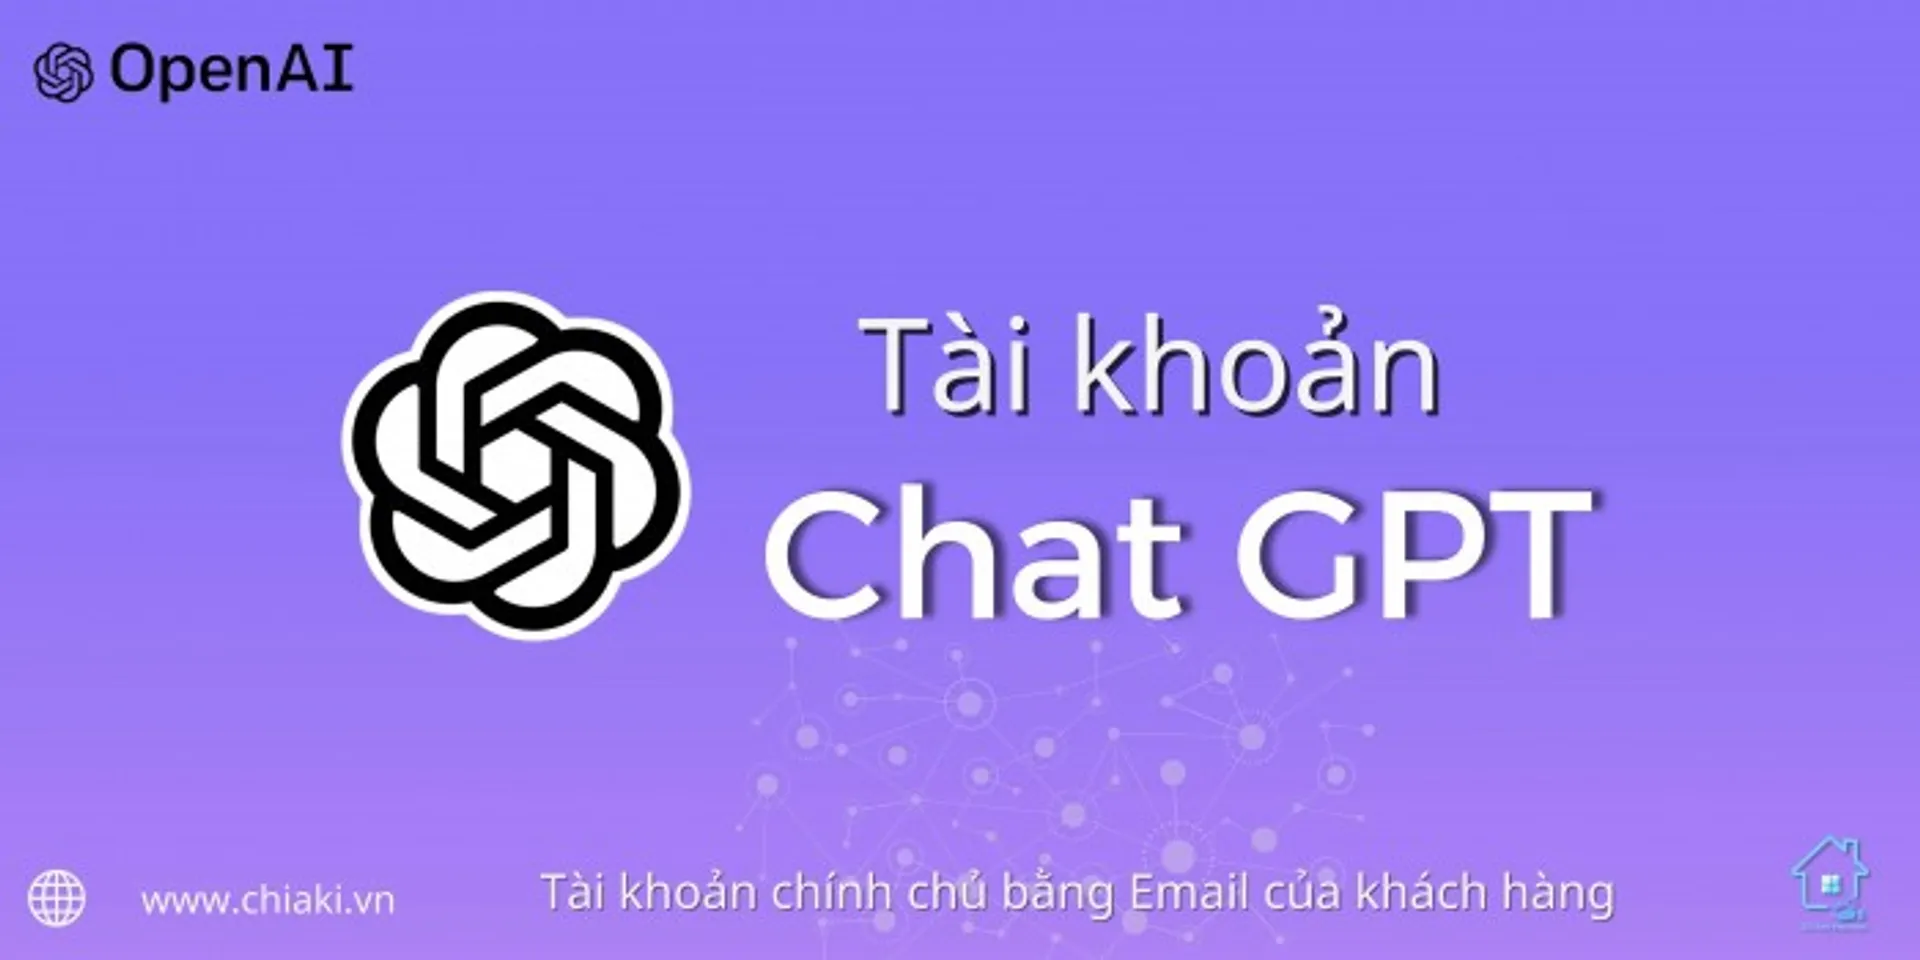 Tài Khoản Chat GPT (by OpenAI) Chính Chủ 1